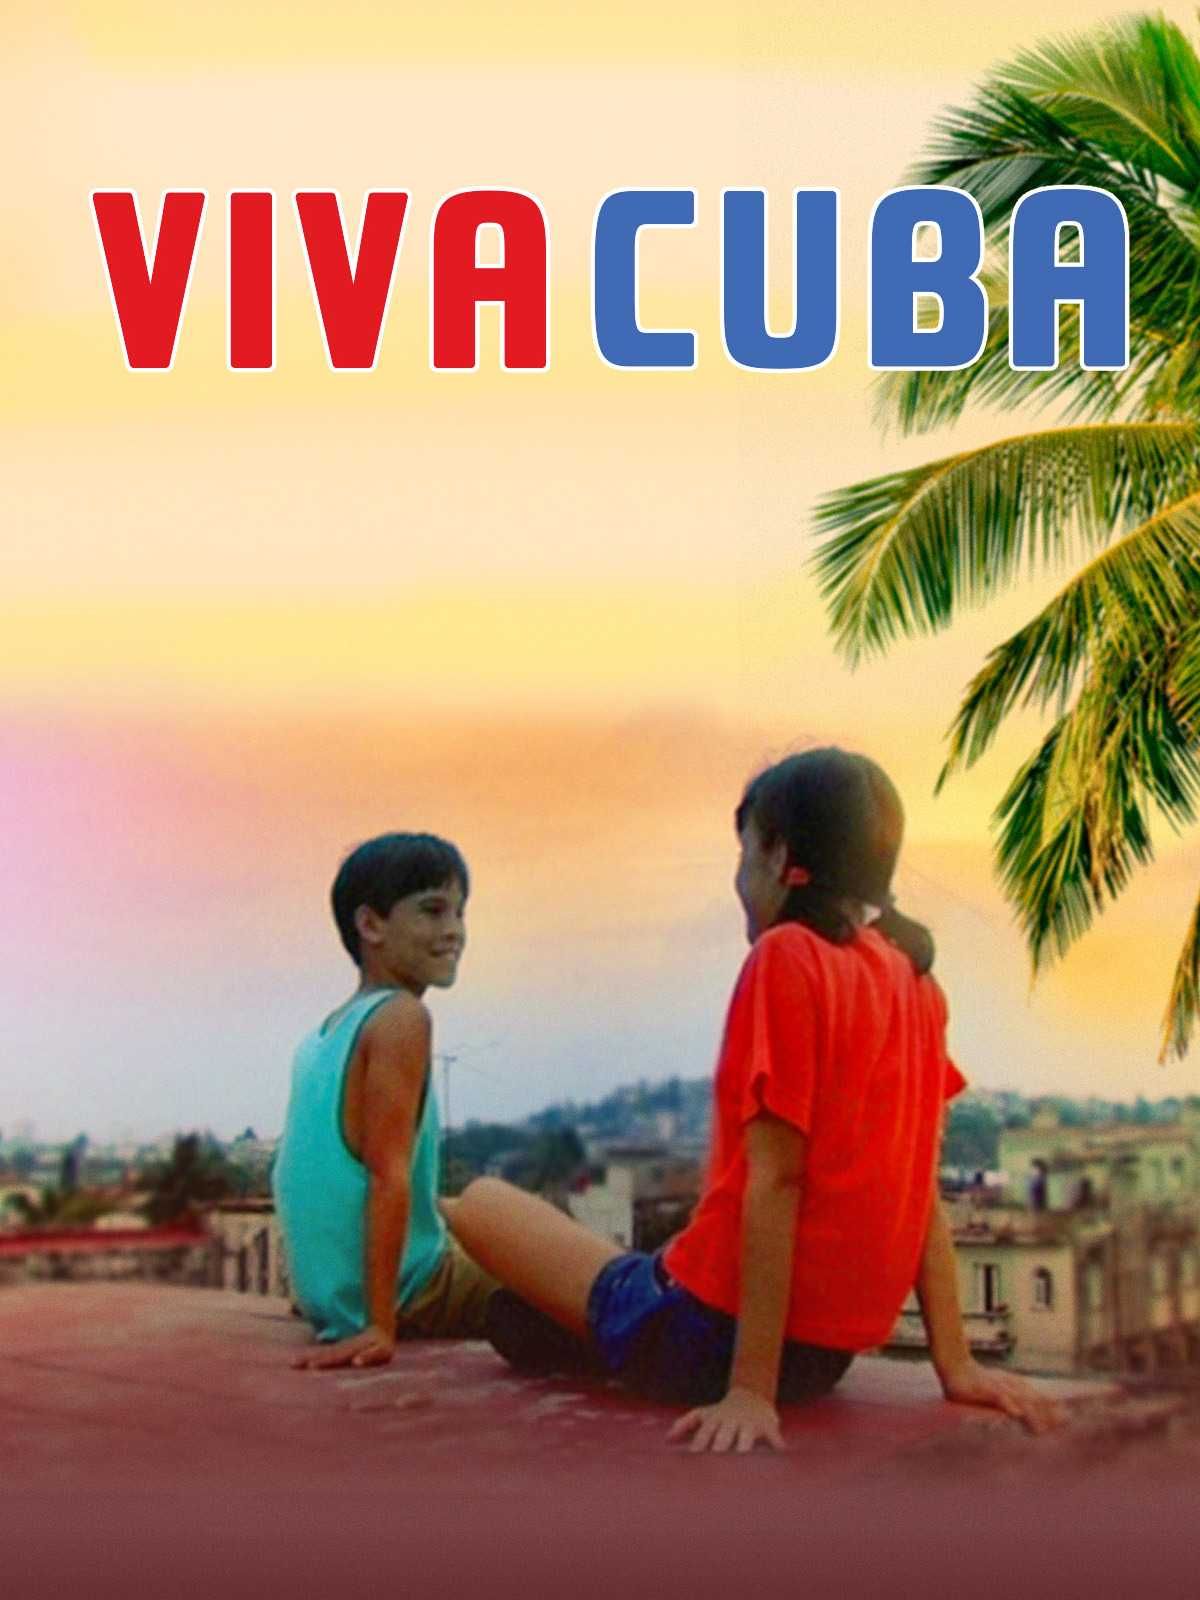 VIVA CUBA -Um profundo e belo retrato de Havana ao redor de 2 crianças